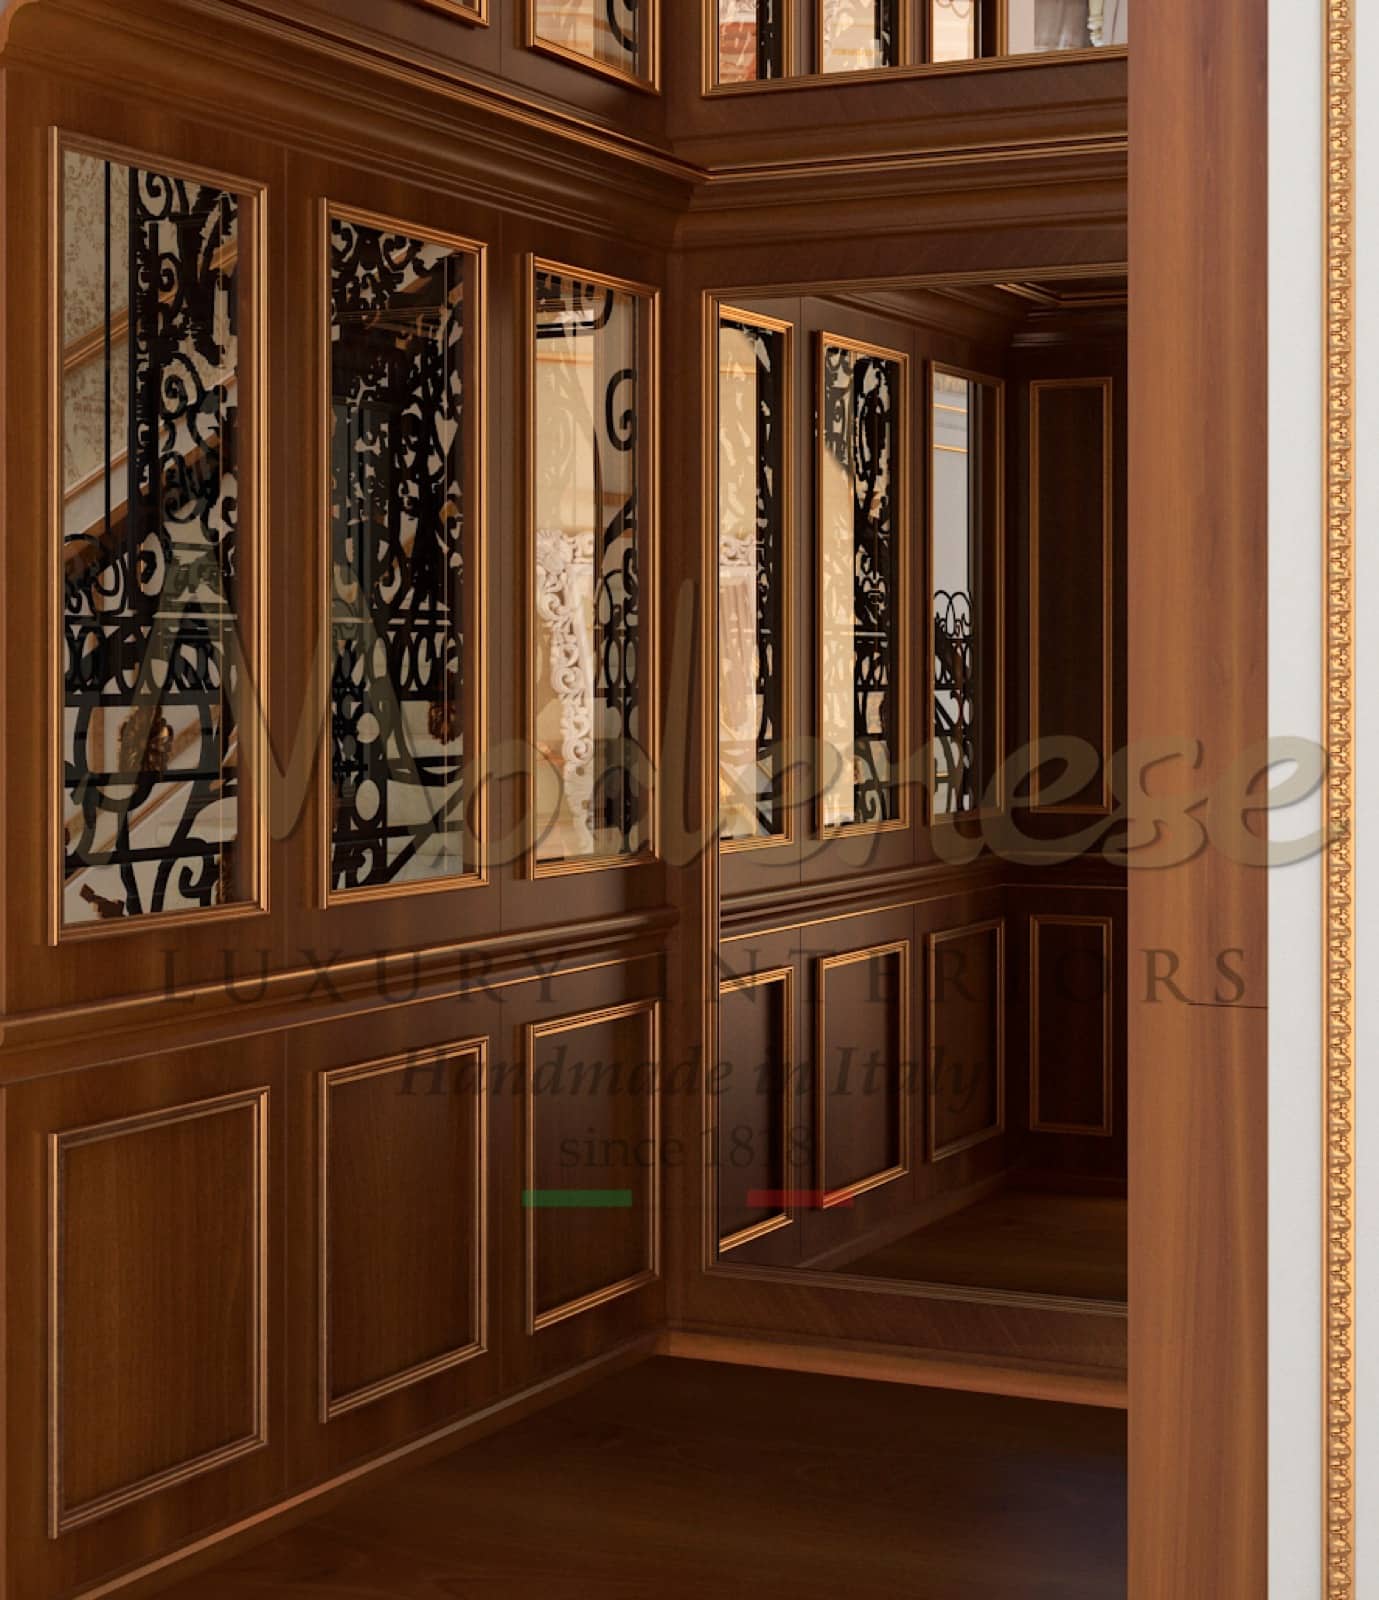 boiserie en bois massif pour la maison ascenseur du palais royal style classique intérieurs italiens meilleurs meubles fabricant de matériaux haut de gamme idées chics baroques luxueuses villa de palais de vie solutions sur mesure